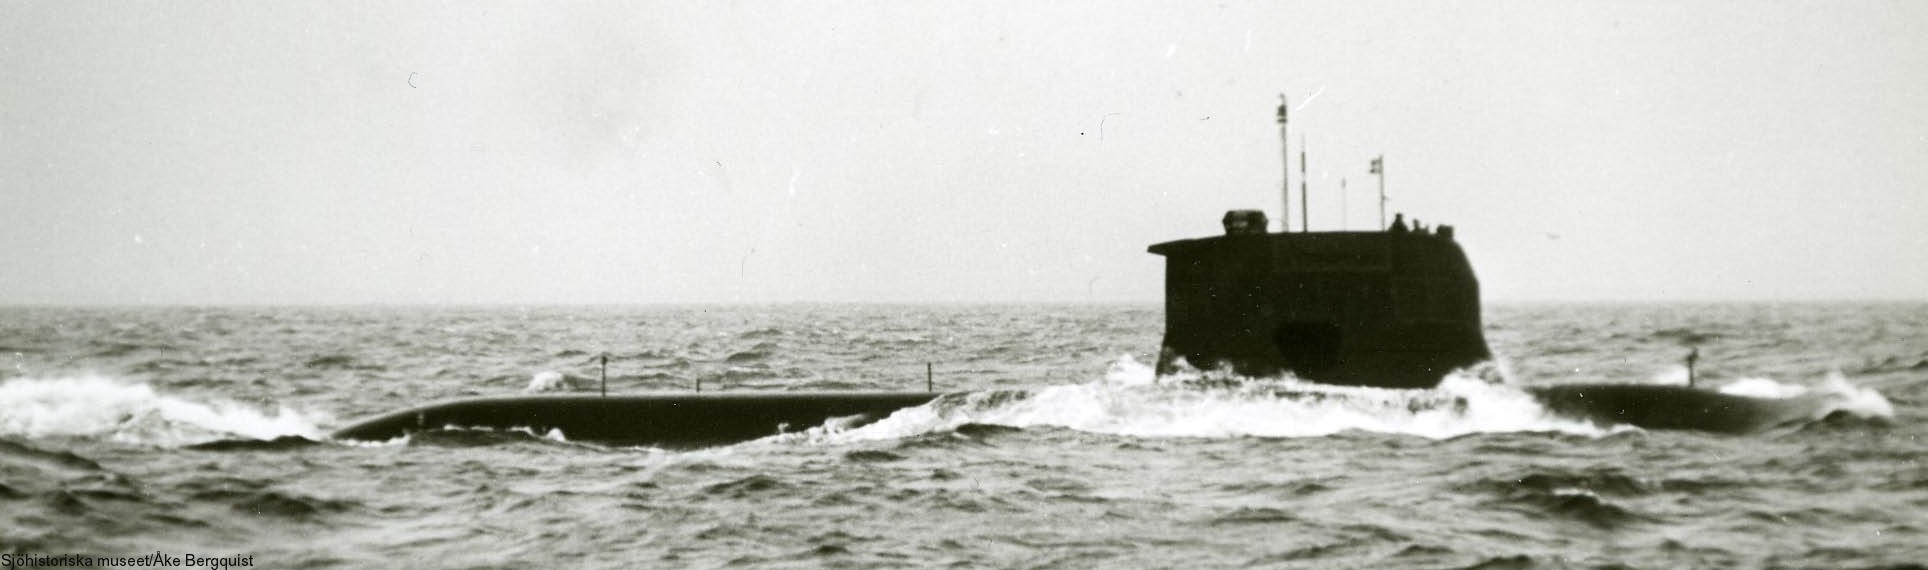 hswms hms sjöormen sjo a11 class submarine ssk swedish navy svenska marinen försvarsmakten 04